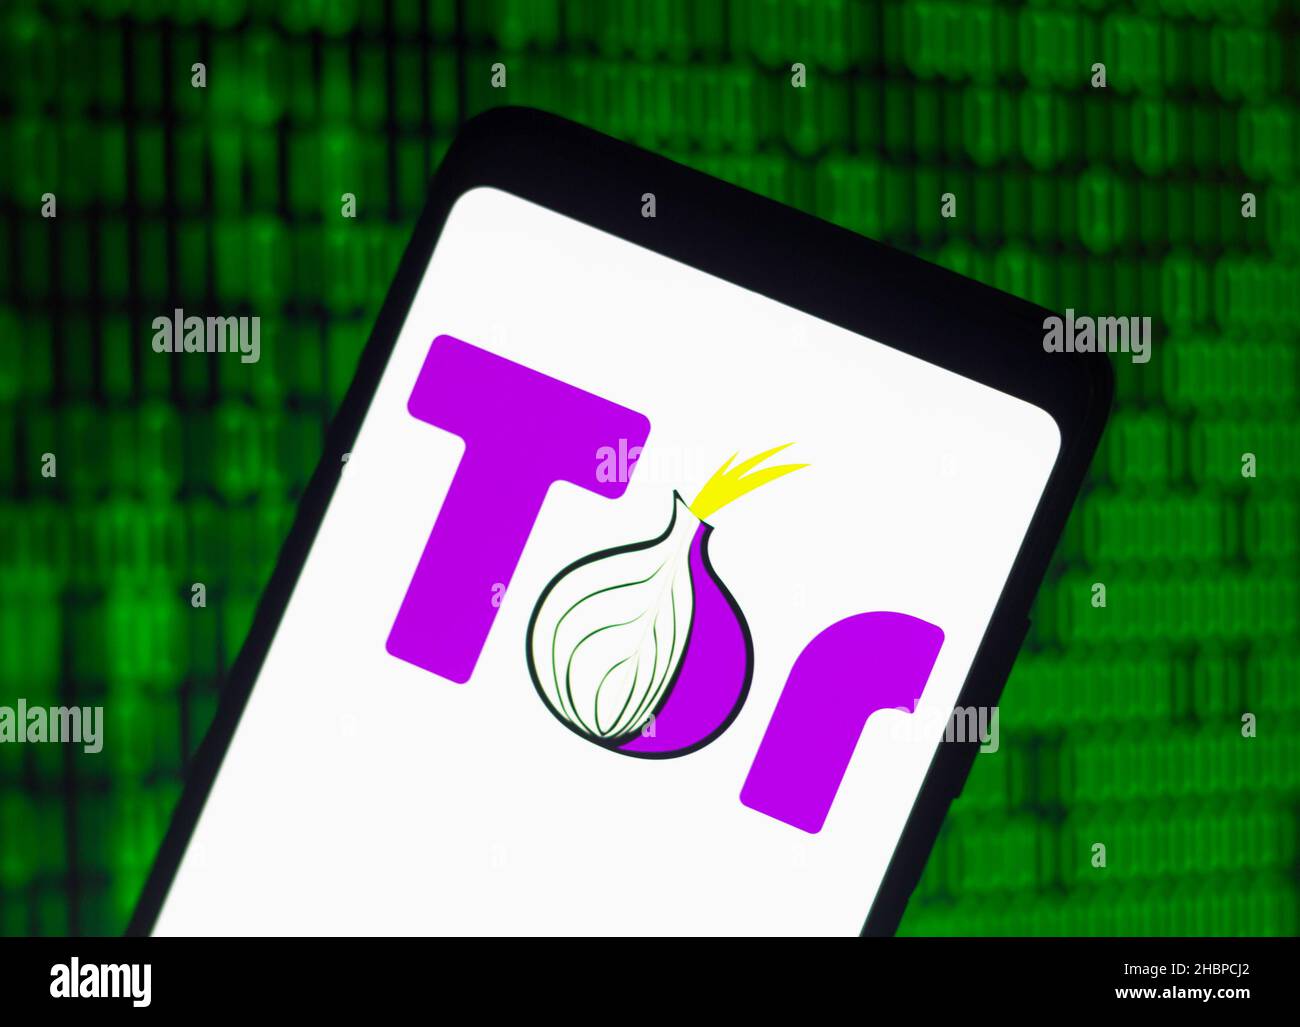 Tor browser images with megaruzxpnew4af тор браузер скачать на андроид бесплатно на русском mega